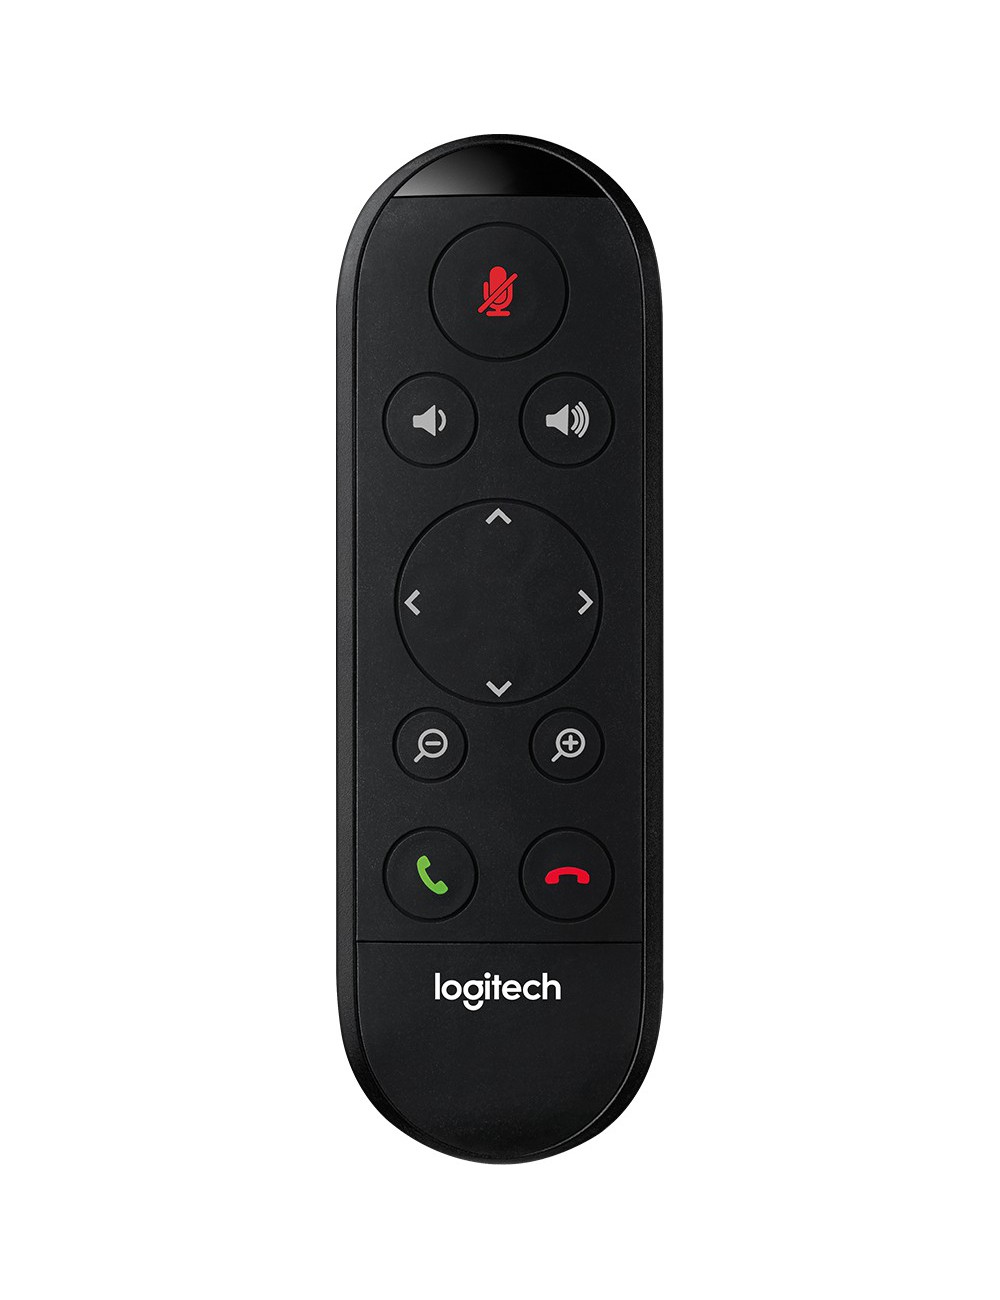 Logitech ConferenceCam Connect mando a distancia IR inalámbrico Webcam Botones